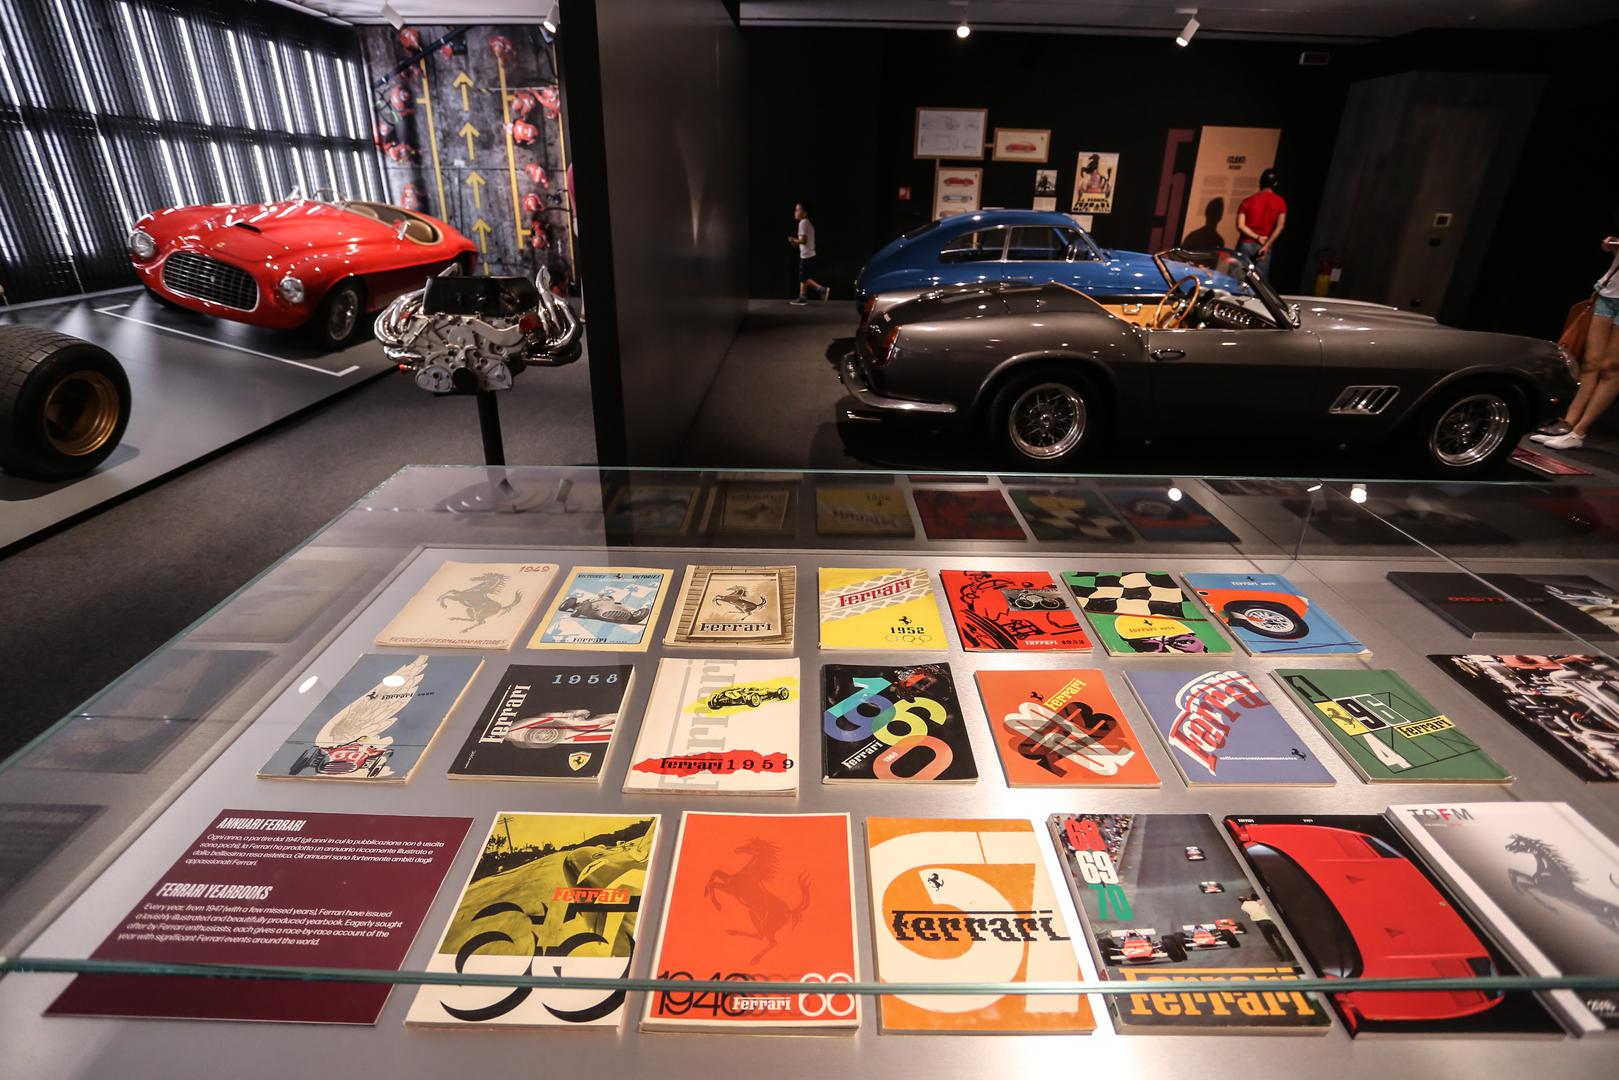 U blizini muzeja nalazi se tvornica Ferrarija, koja je još od 1943. jedan od pokretača talijanskog gospodarstva, gdje se dizajniraju i proizvode Ferrariji, sve osim šasija i karoserija koje još uvijek dolaze iz Carrozzerije Scaglietti u Modeni